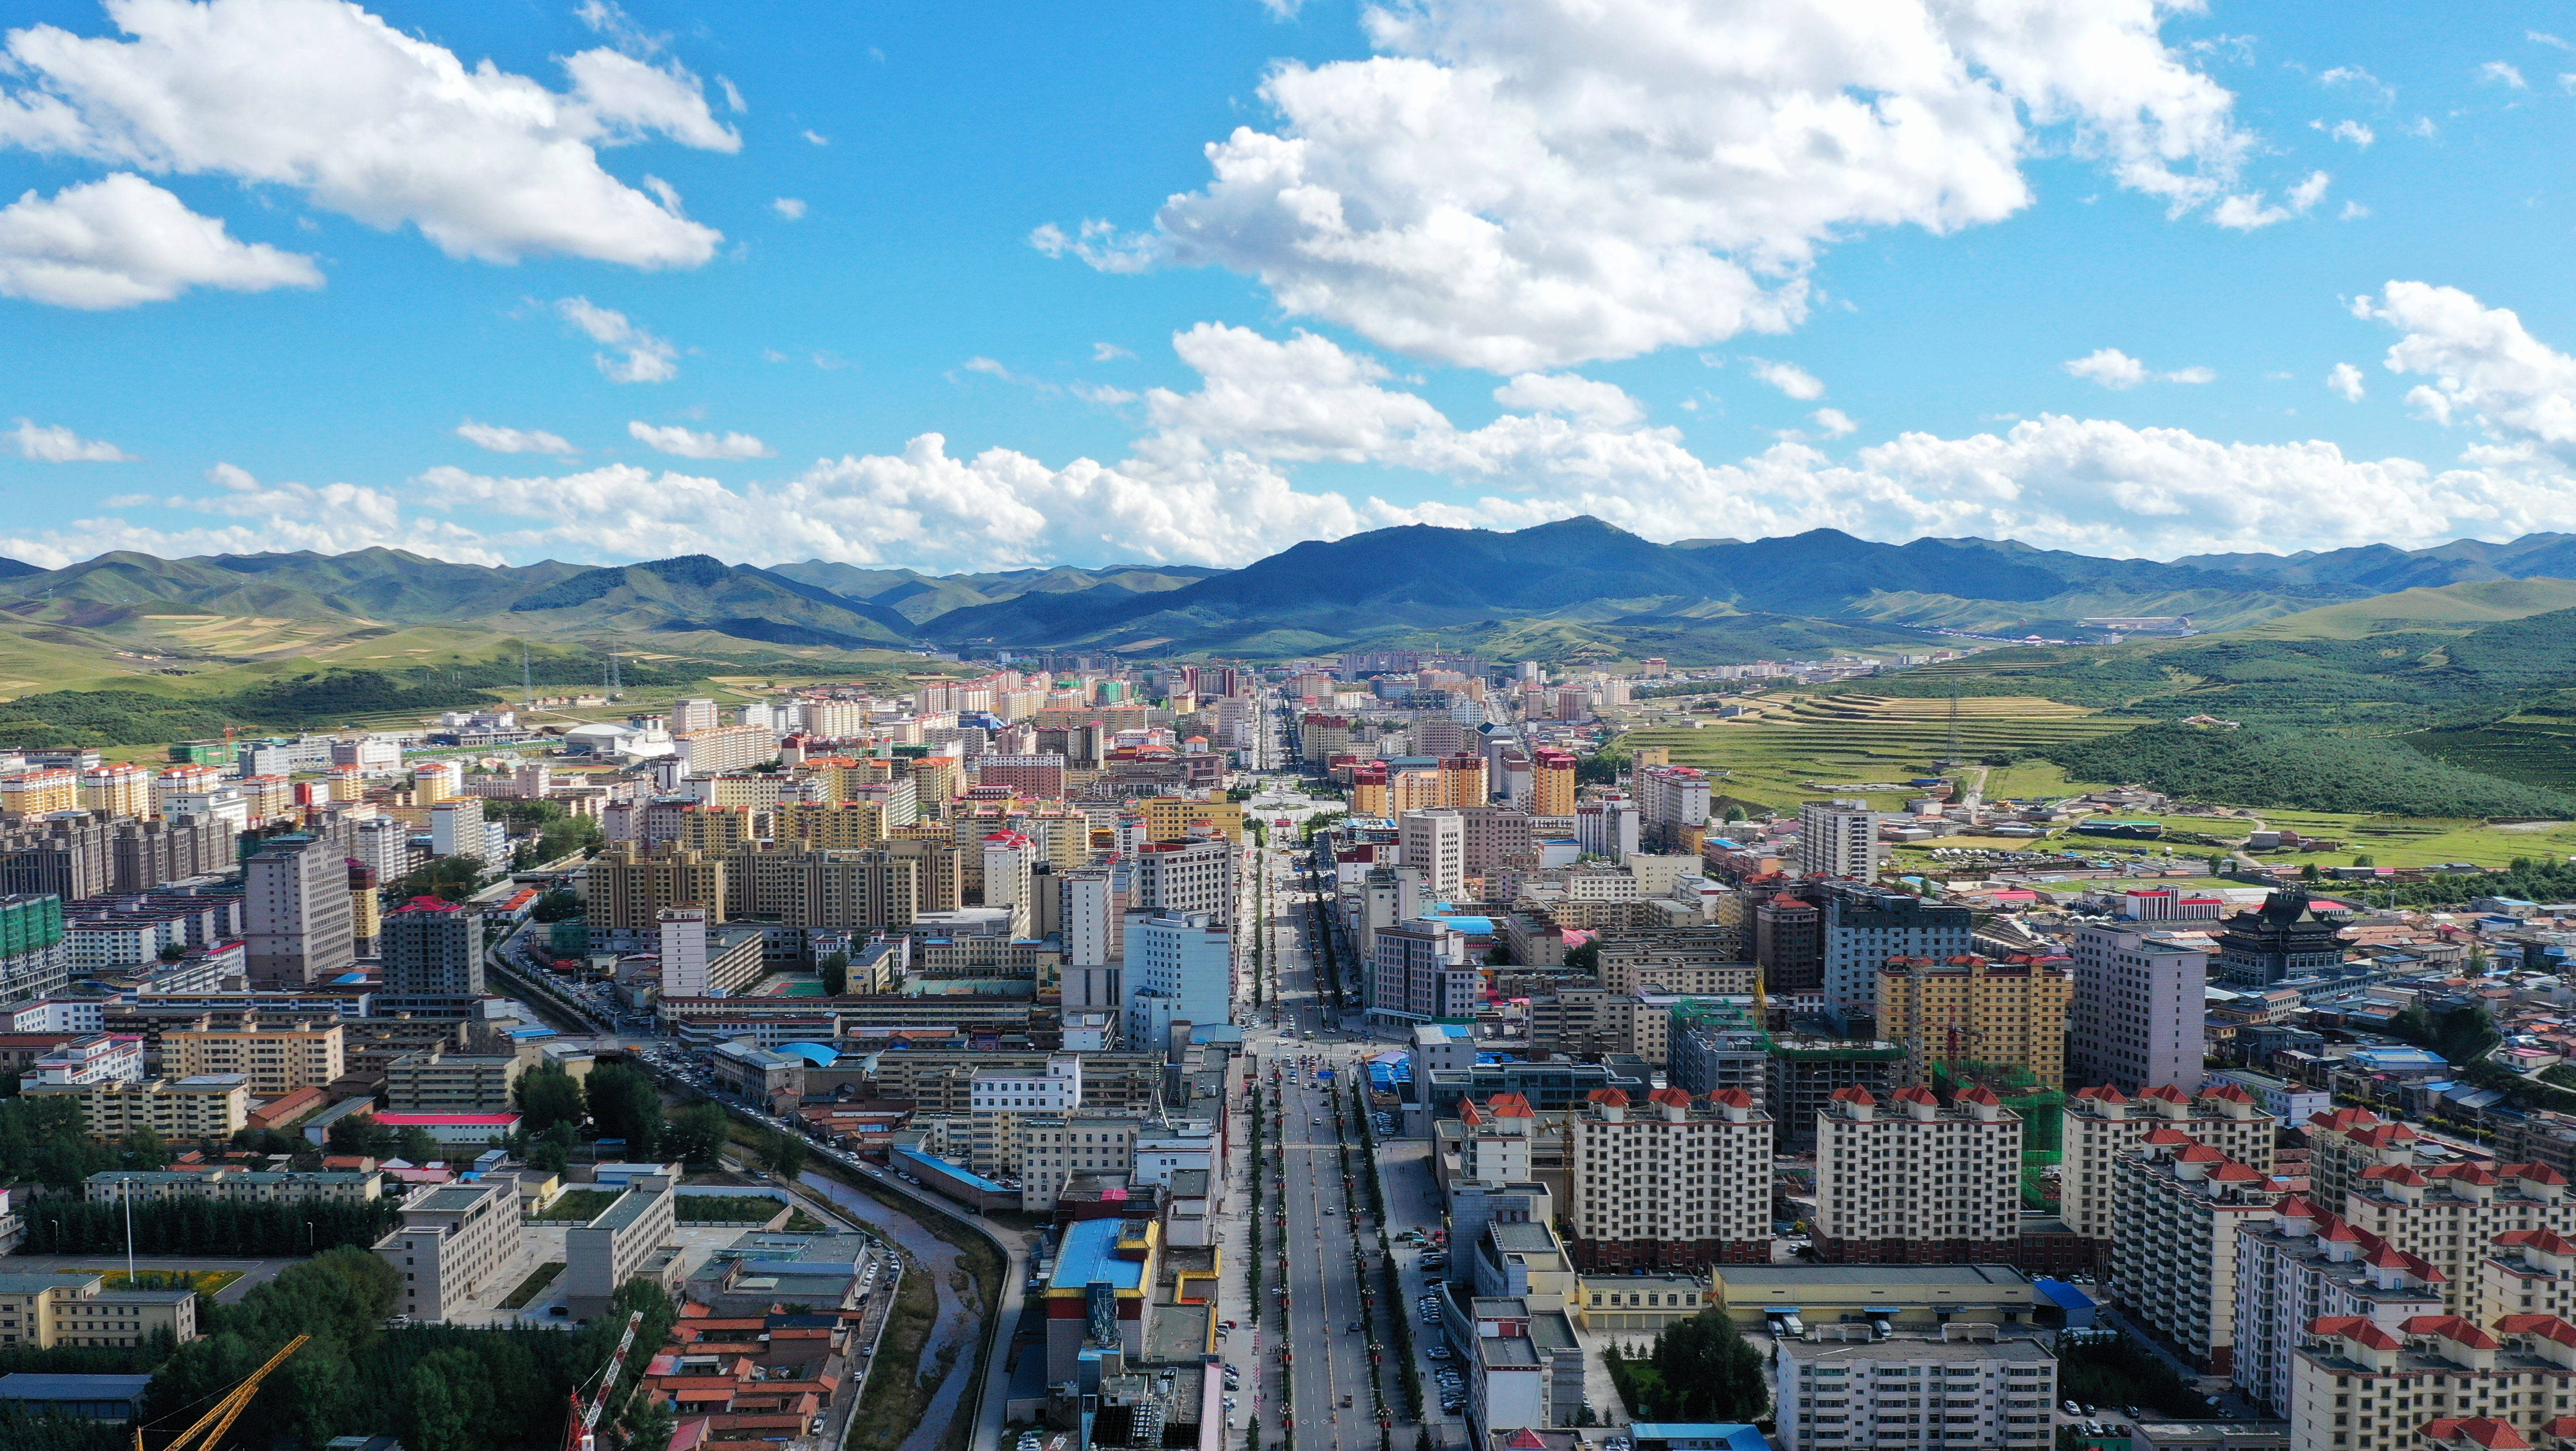 这是8月31日拍摄的甘南藏族自治州首府合作市城市面貌(无人机照片).